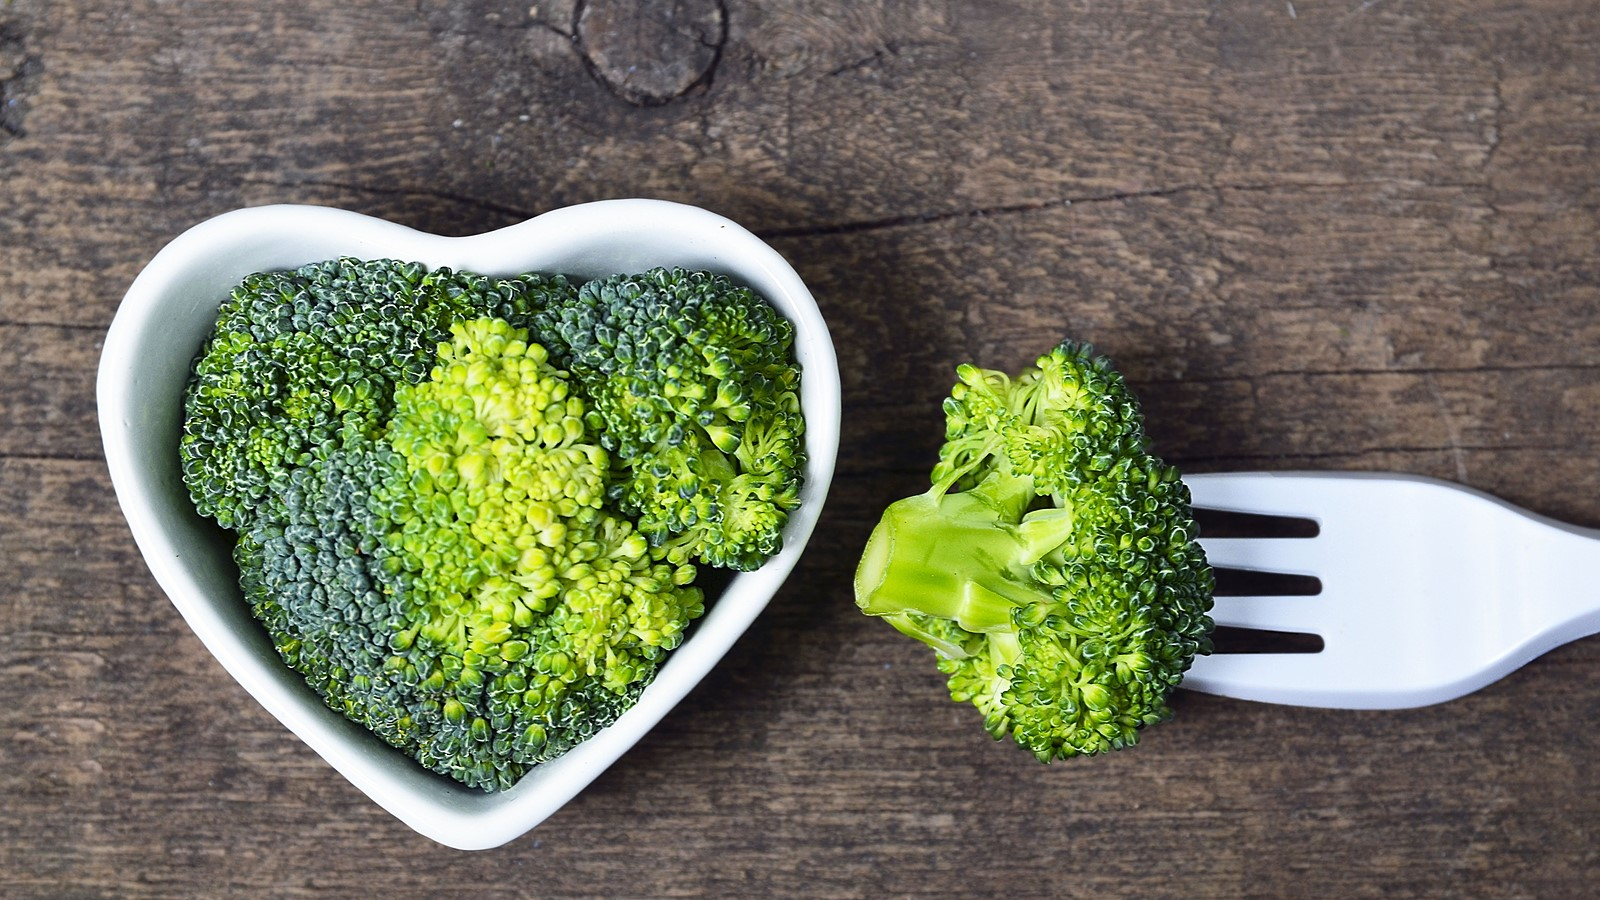 A szívbetegségek kockázata tényleg csökkenthető zöldségekkel?